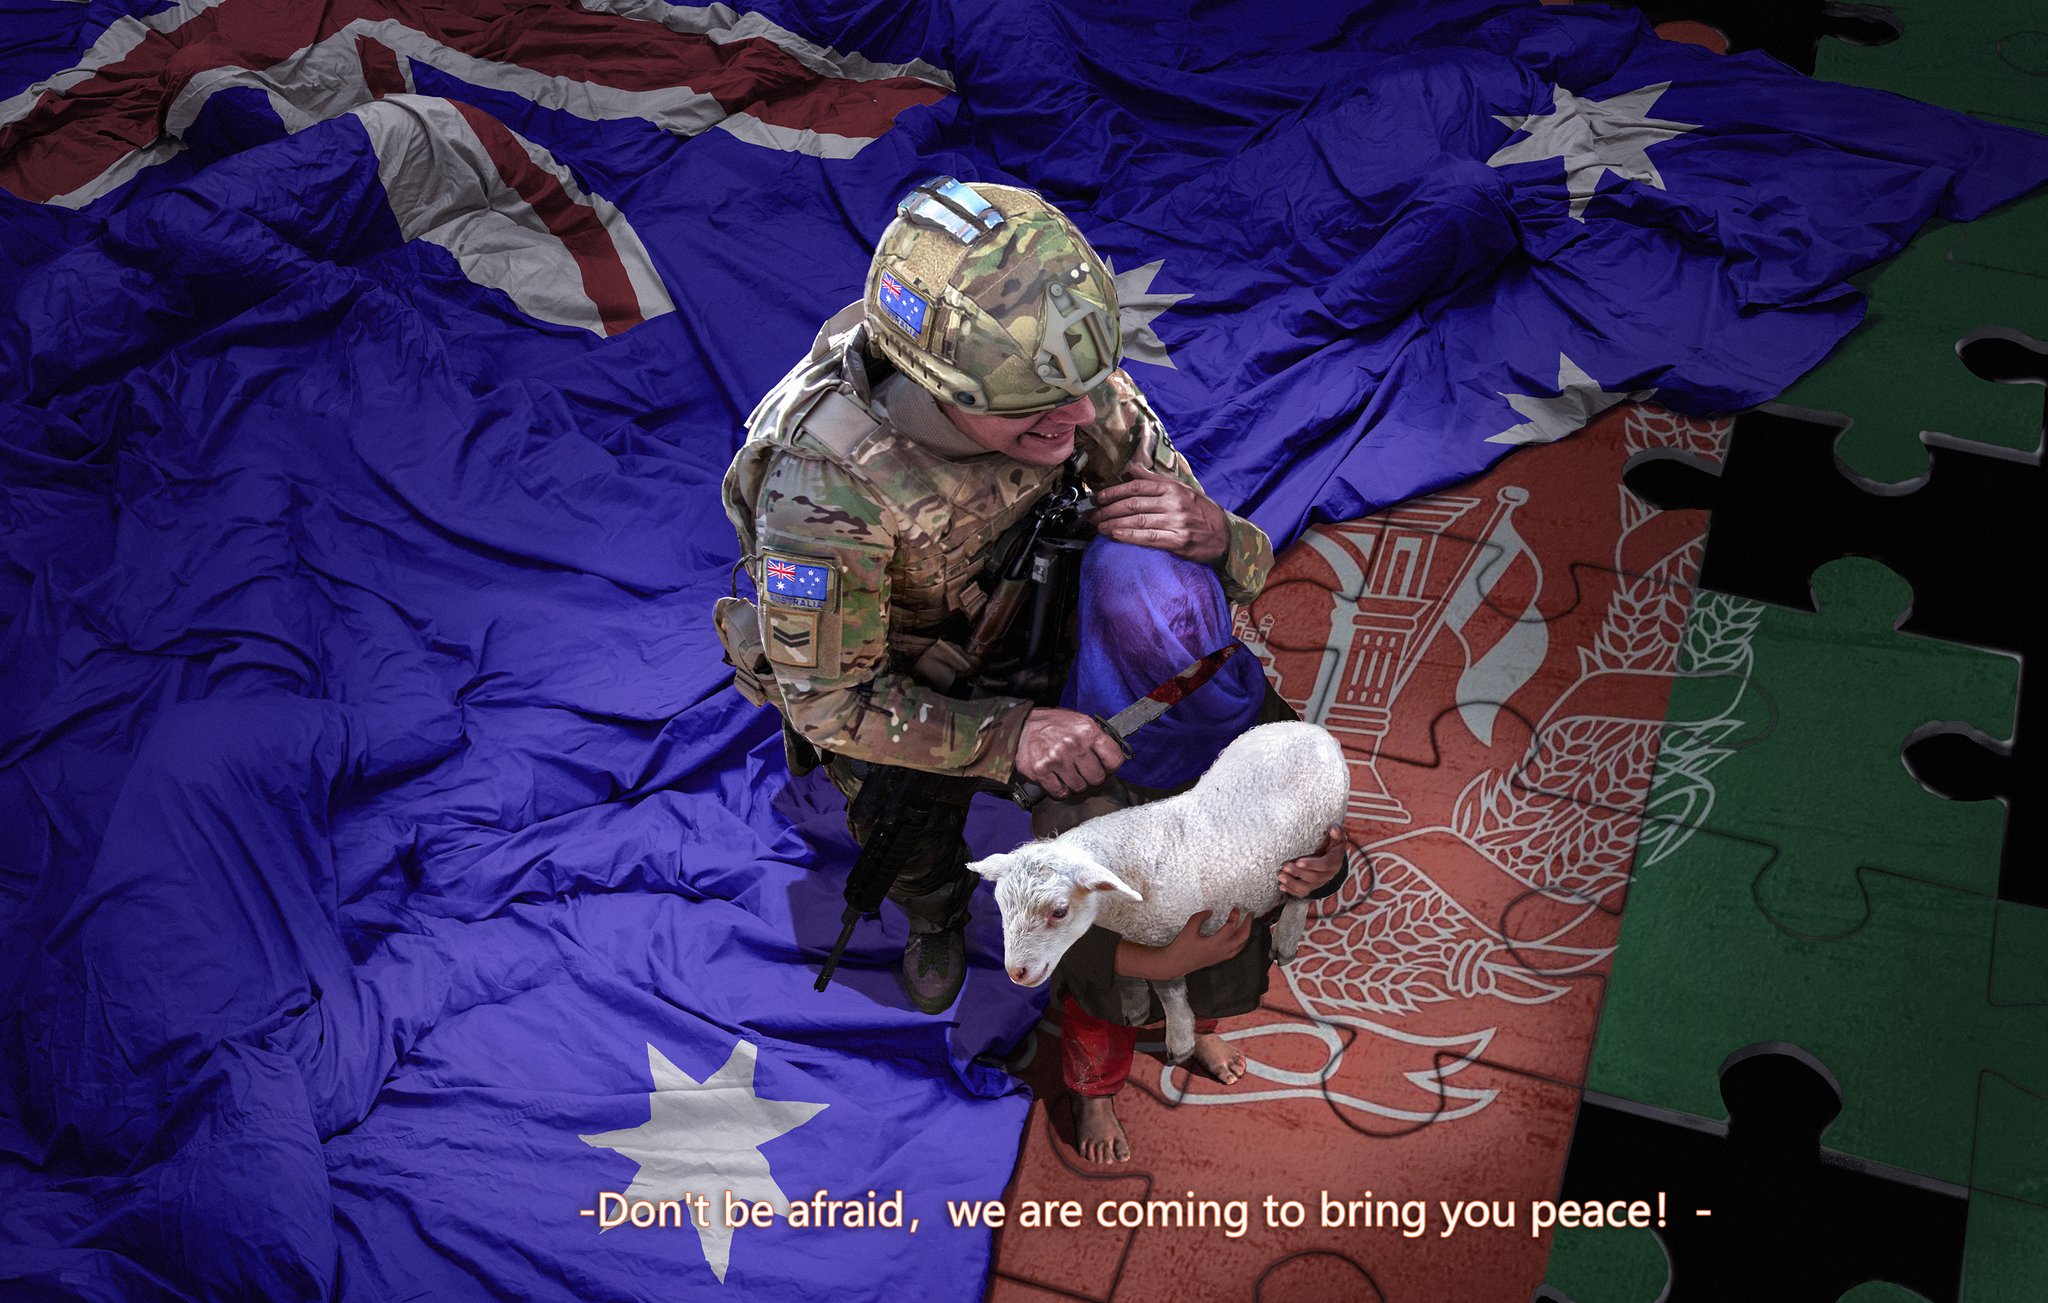 澳士兵理應受到尊重? 澳大利亞反對派領袖發言引起眾怒-圖2